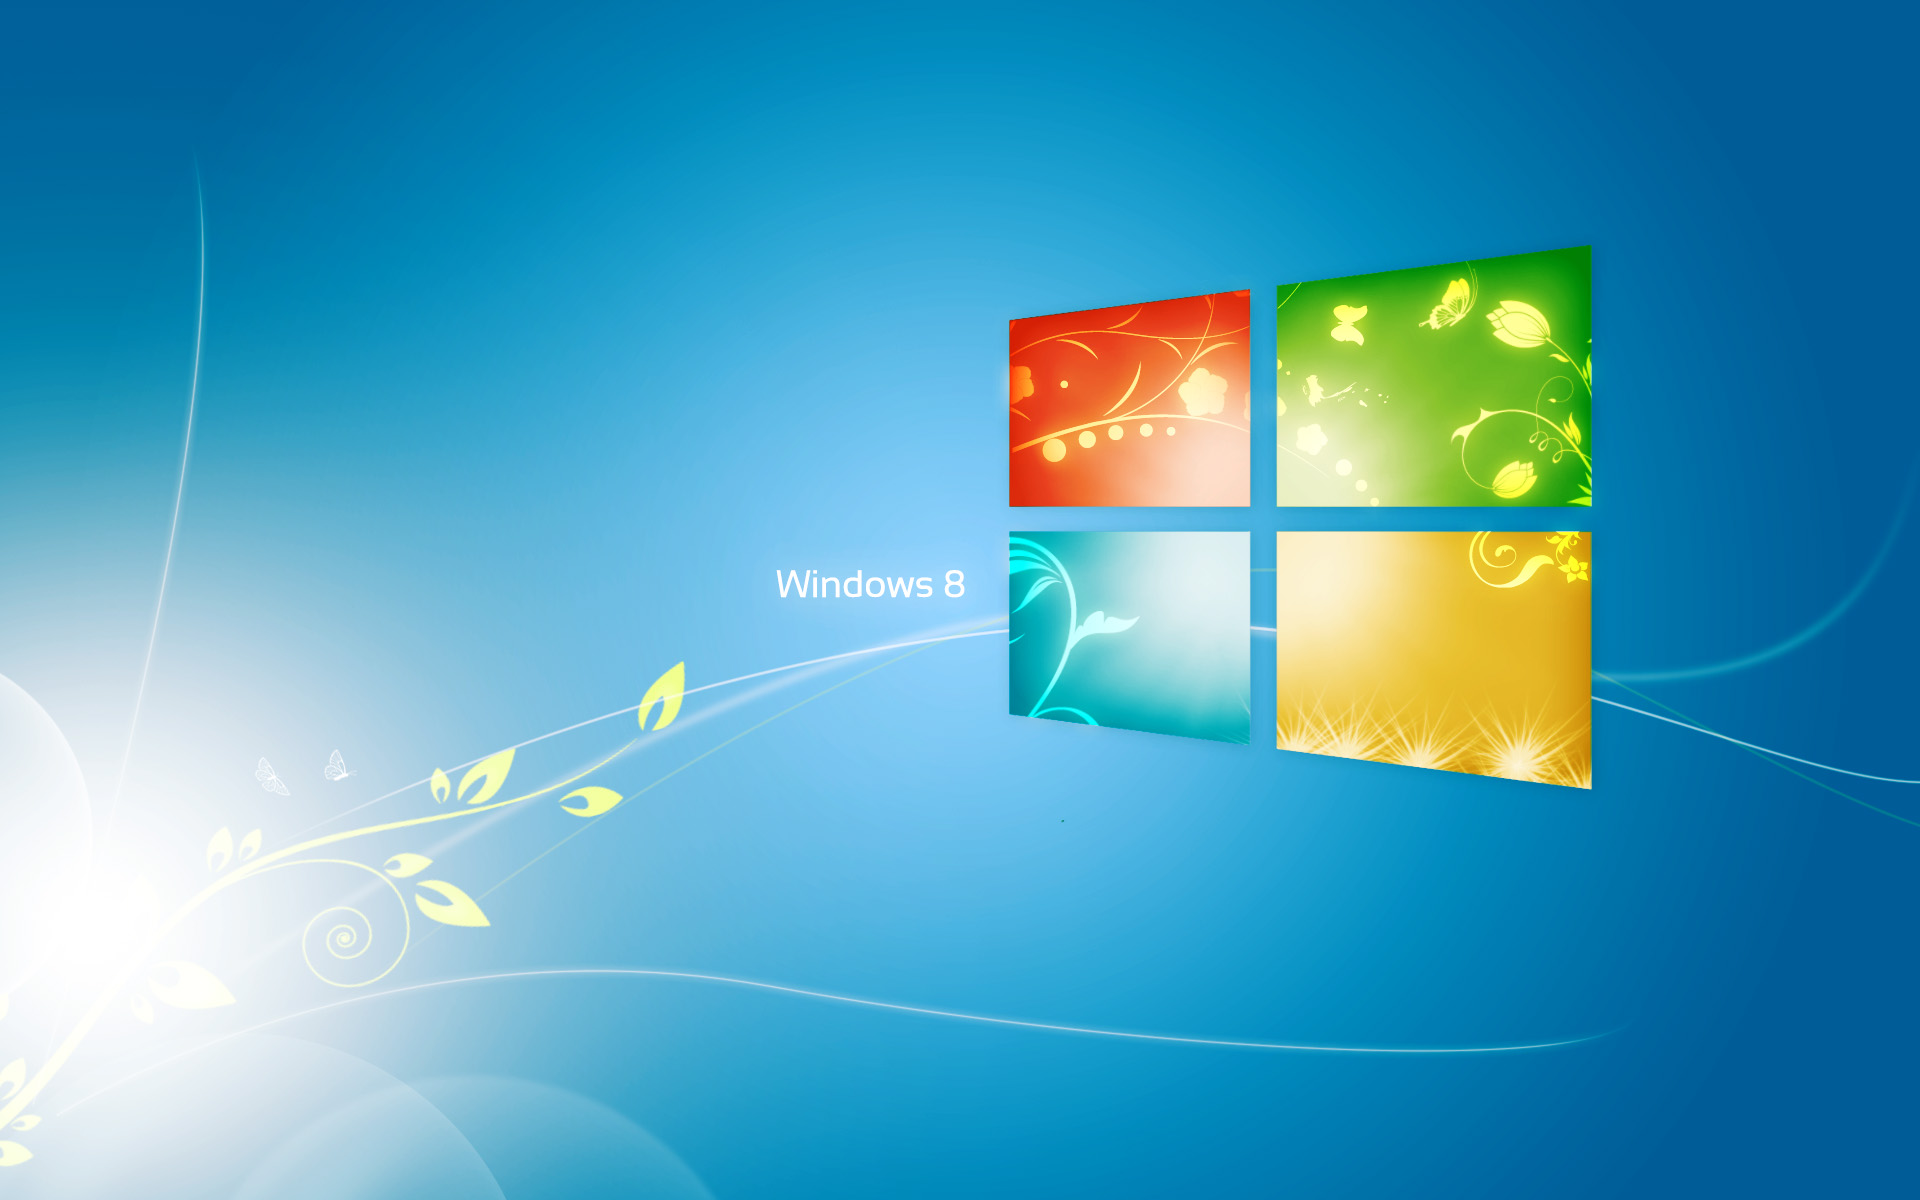 Hình nền Windows 8 Logo: Windows 8 Logo là biểu tượng của sự đổi mới và tiên tiến. Xem và cảm nhận những hình nền đẹp mắt này để truyền tải thông điệp đó đến cho mọi người xung quanh bạn.